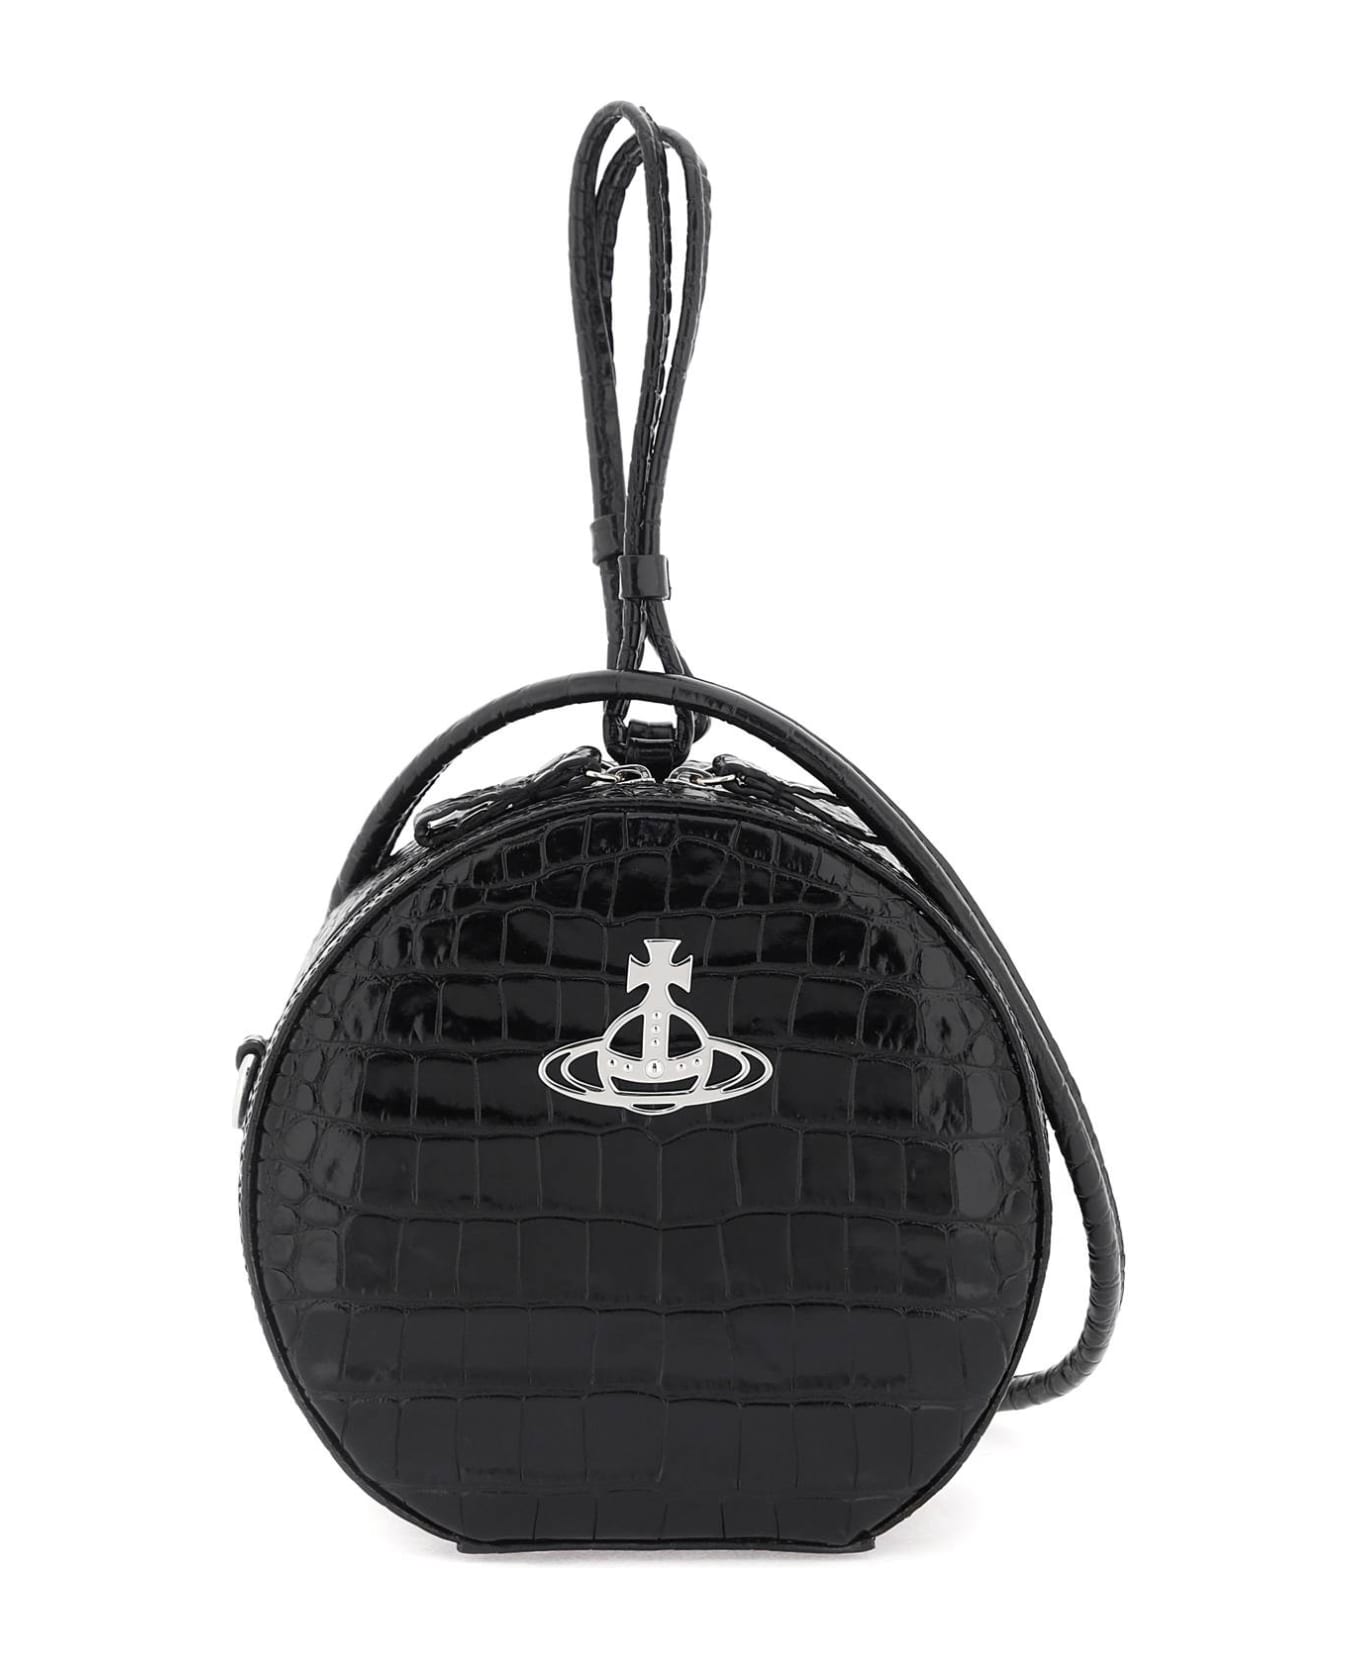 Vivienne Westwood Hattie Handbag - BLACK (Black) トートバッグ